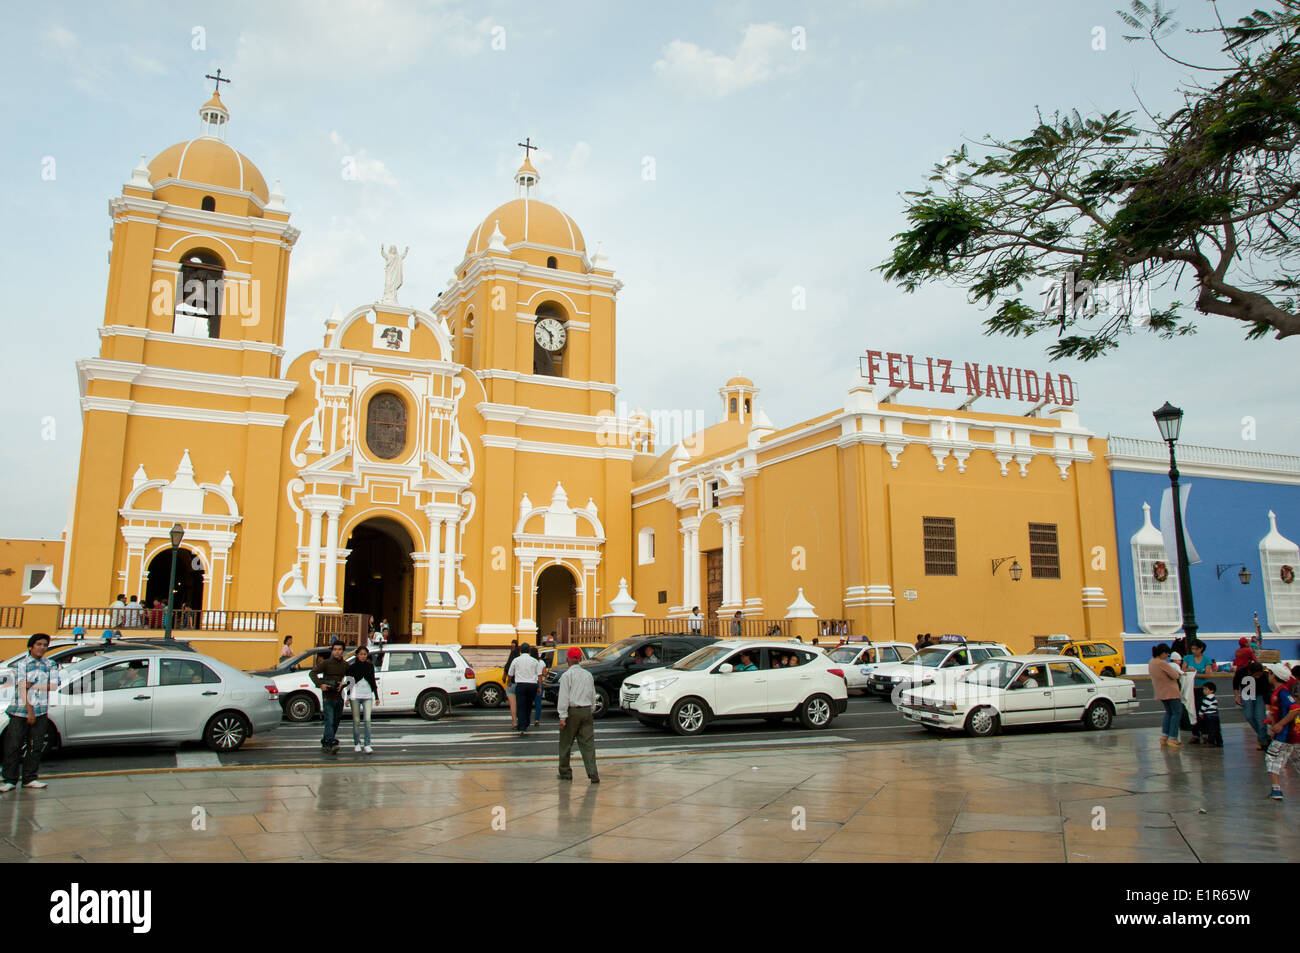 Cathédrale de la place principale de la ville coloniale de Trujillo, Pérou Banque D'Images